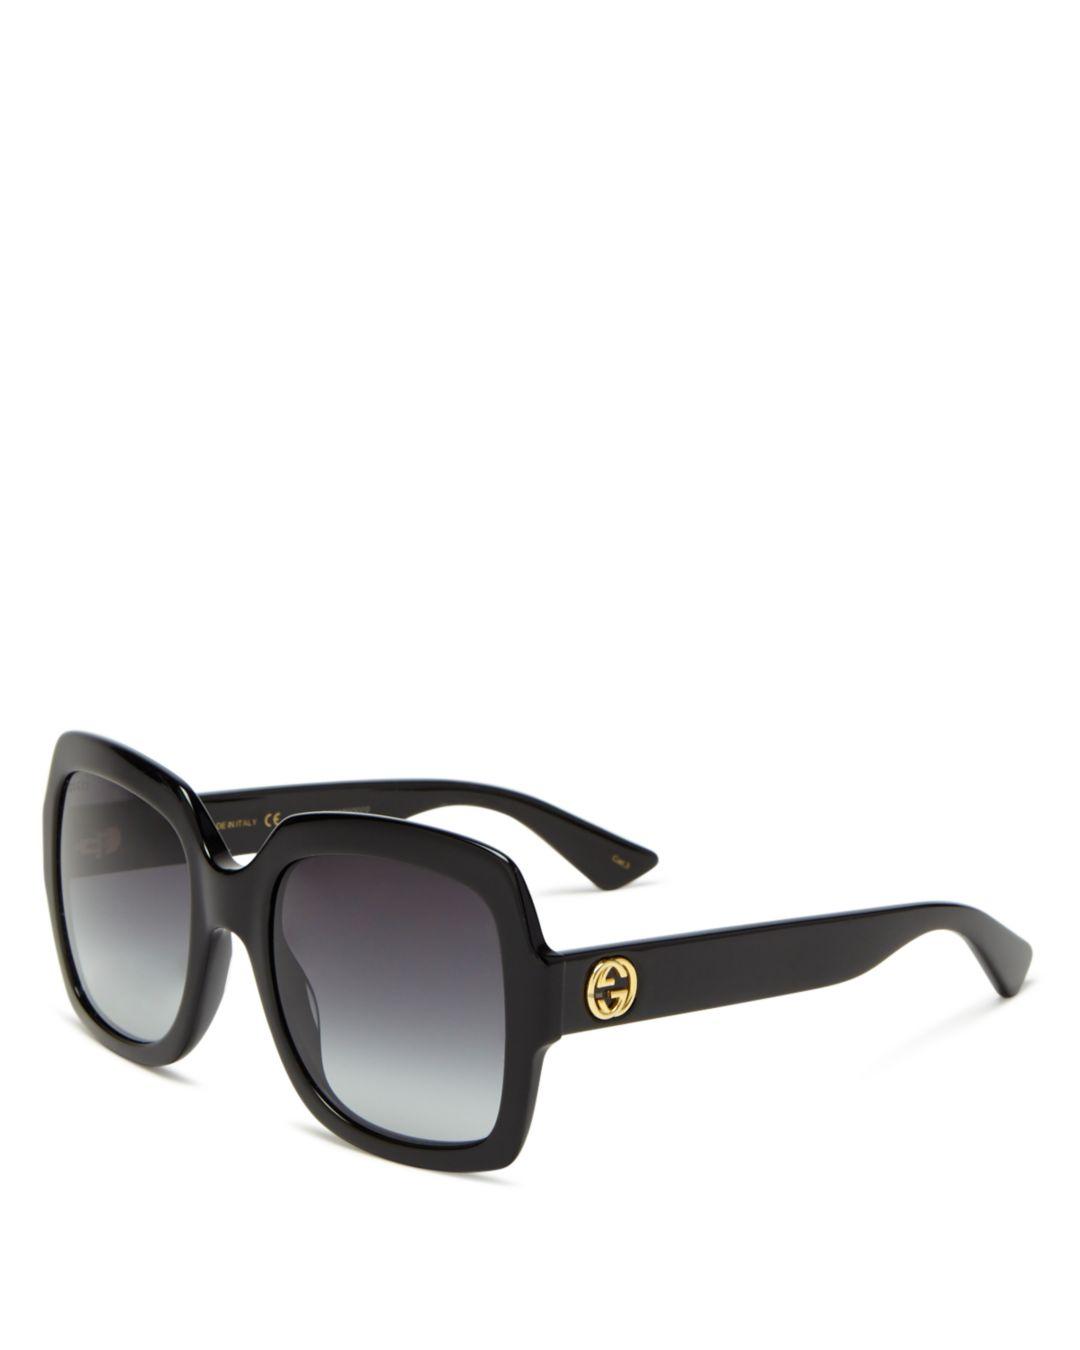 Gucci Women S Oversized Gradient Square Sunglasses In Black Save 52